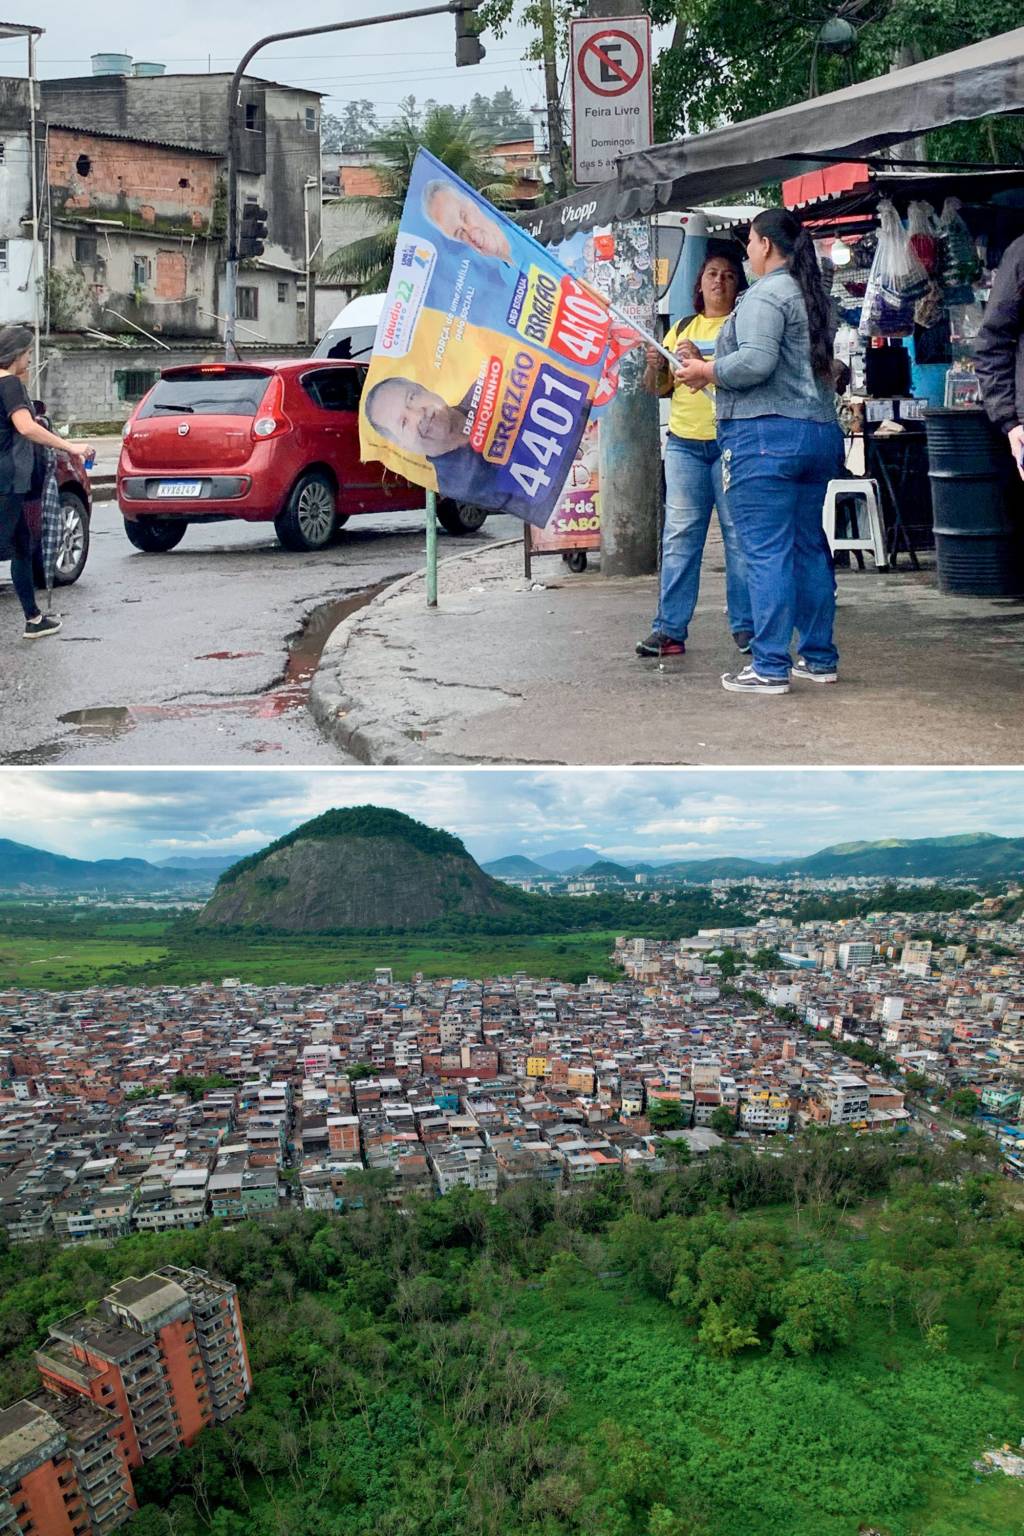 TRIAGEM - Rio das Pedras: no bolsão de pobreza situado na Zona Oeste (ao lado), só quem passa pelo crivo dos bandidos pode agitar bandeiras -